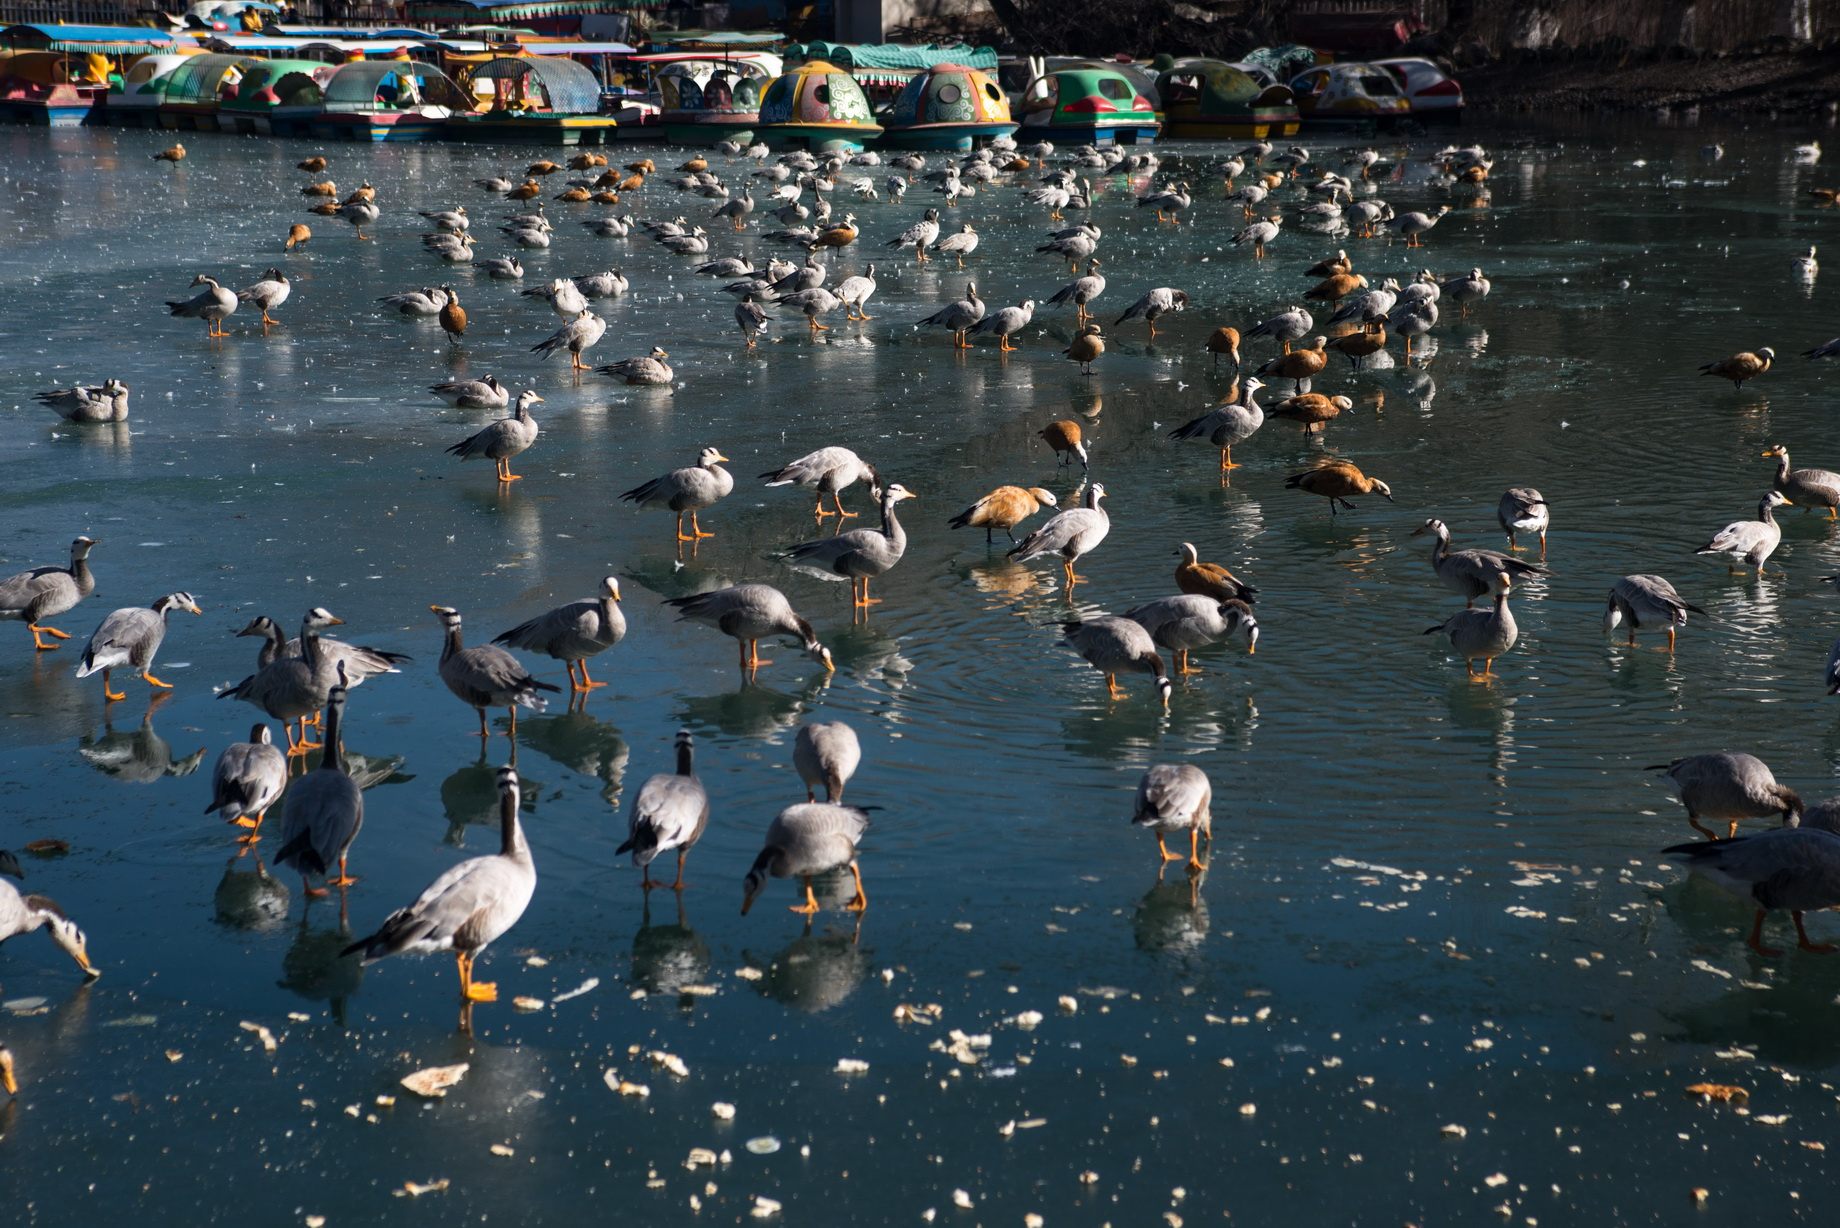 پرندگان آزاد در مراسم مذهبی در تبت